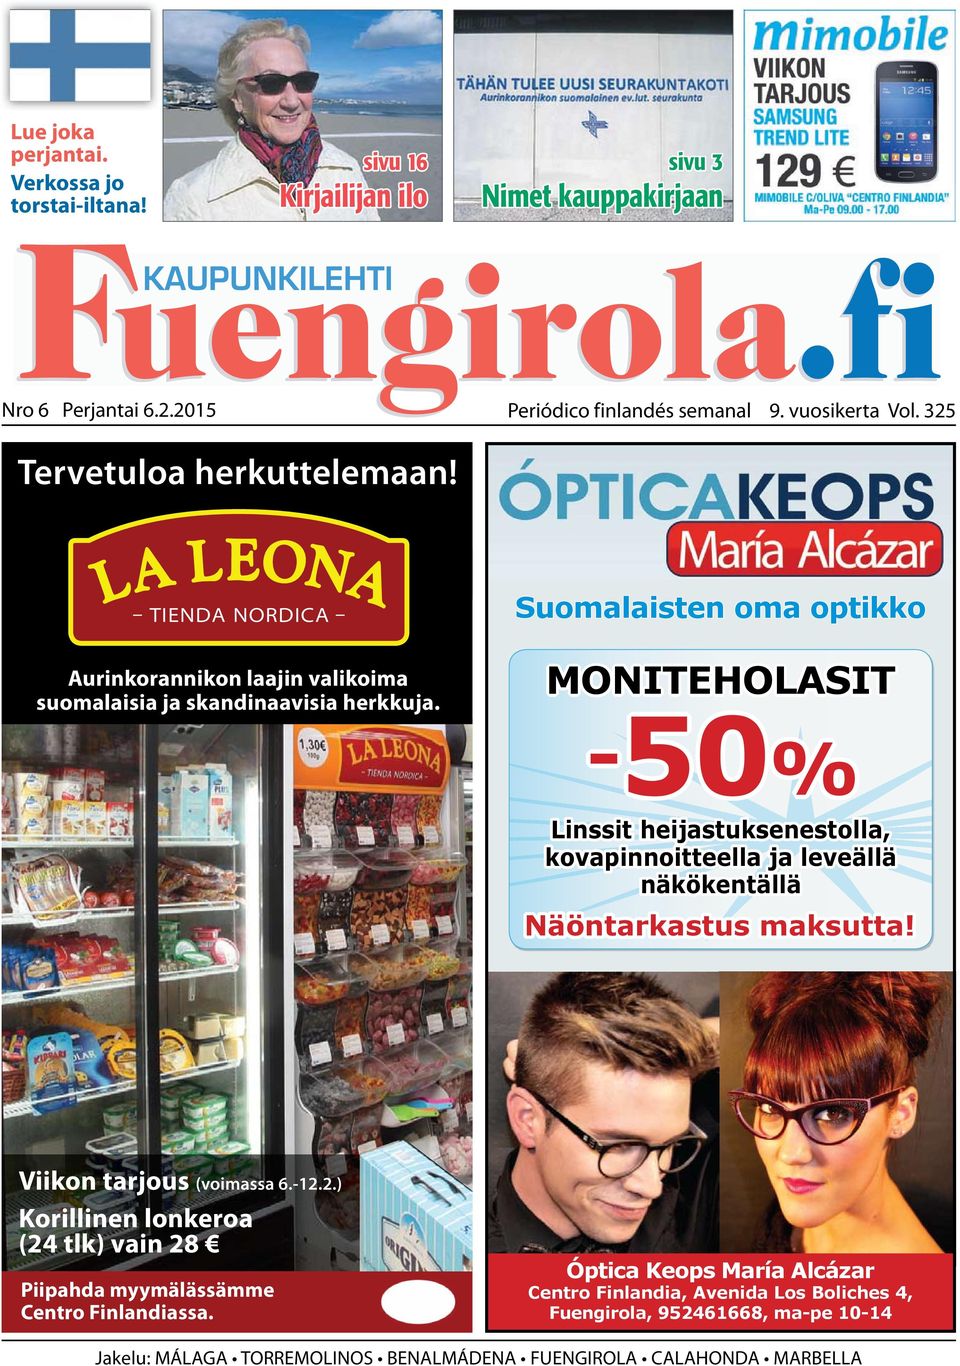 Suomalaisten oma optikko MONITEHOLASIT -50% Linssit heijastuksenestolla, kovapinnoitteella ja leveällä näkökentällä Näöntarkastus maksutta! Viikon tarjous (voimassa 6.-12.